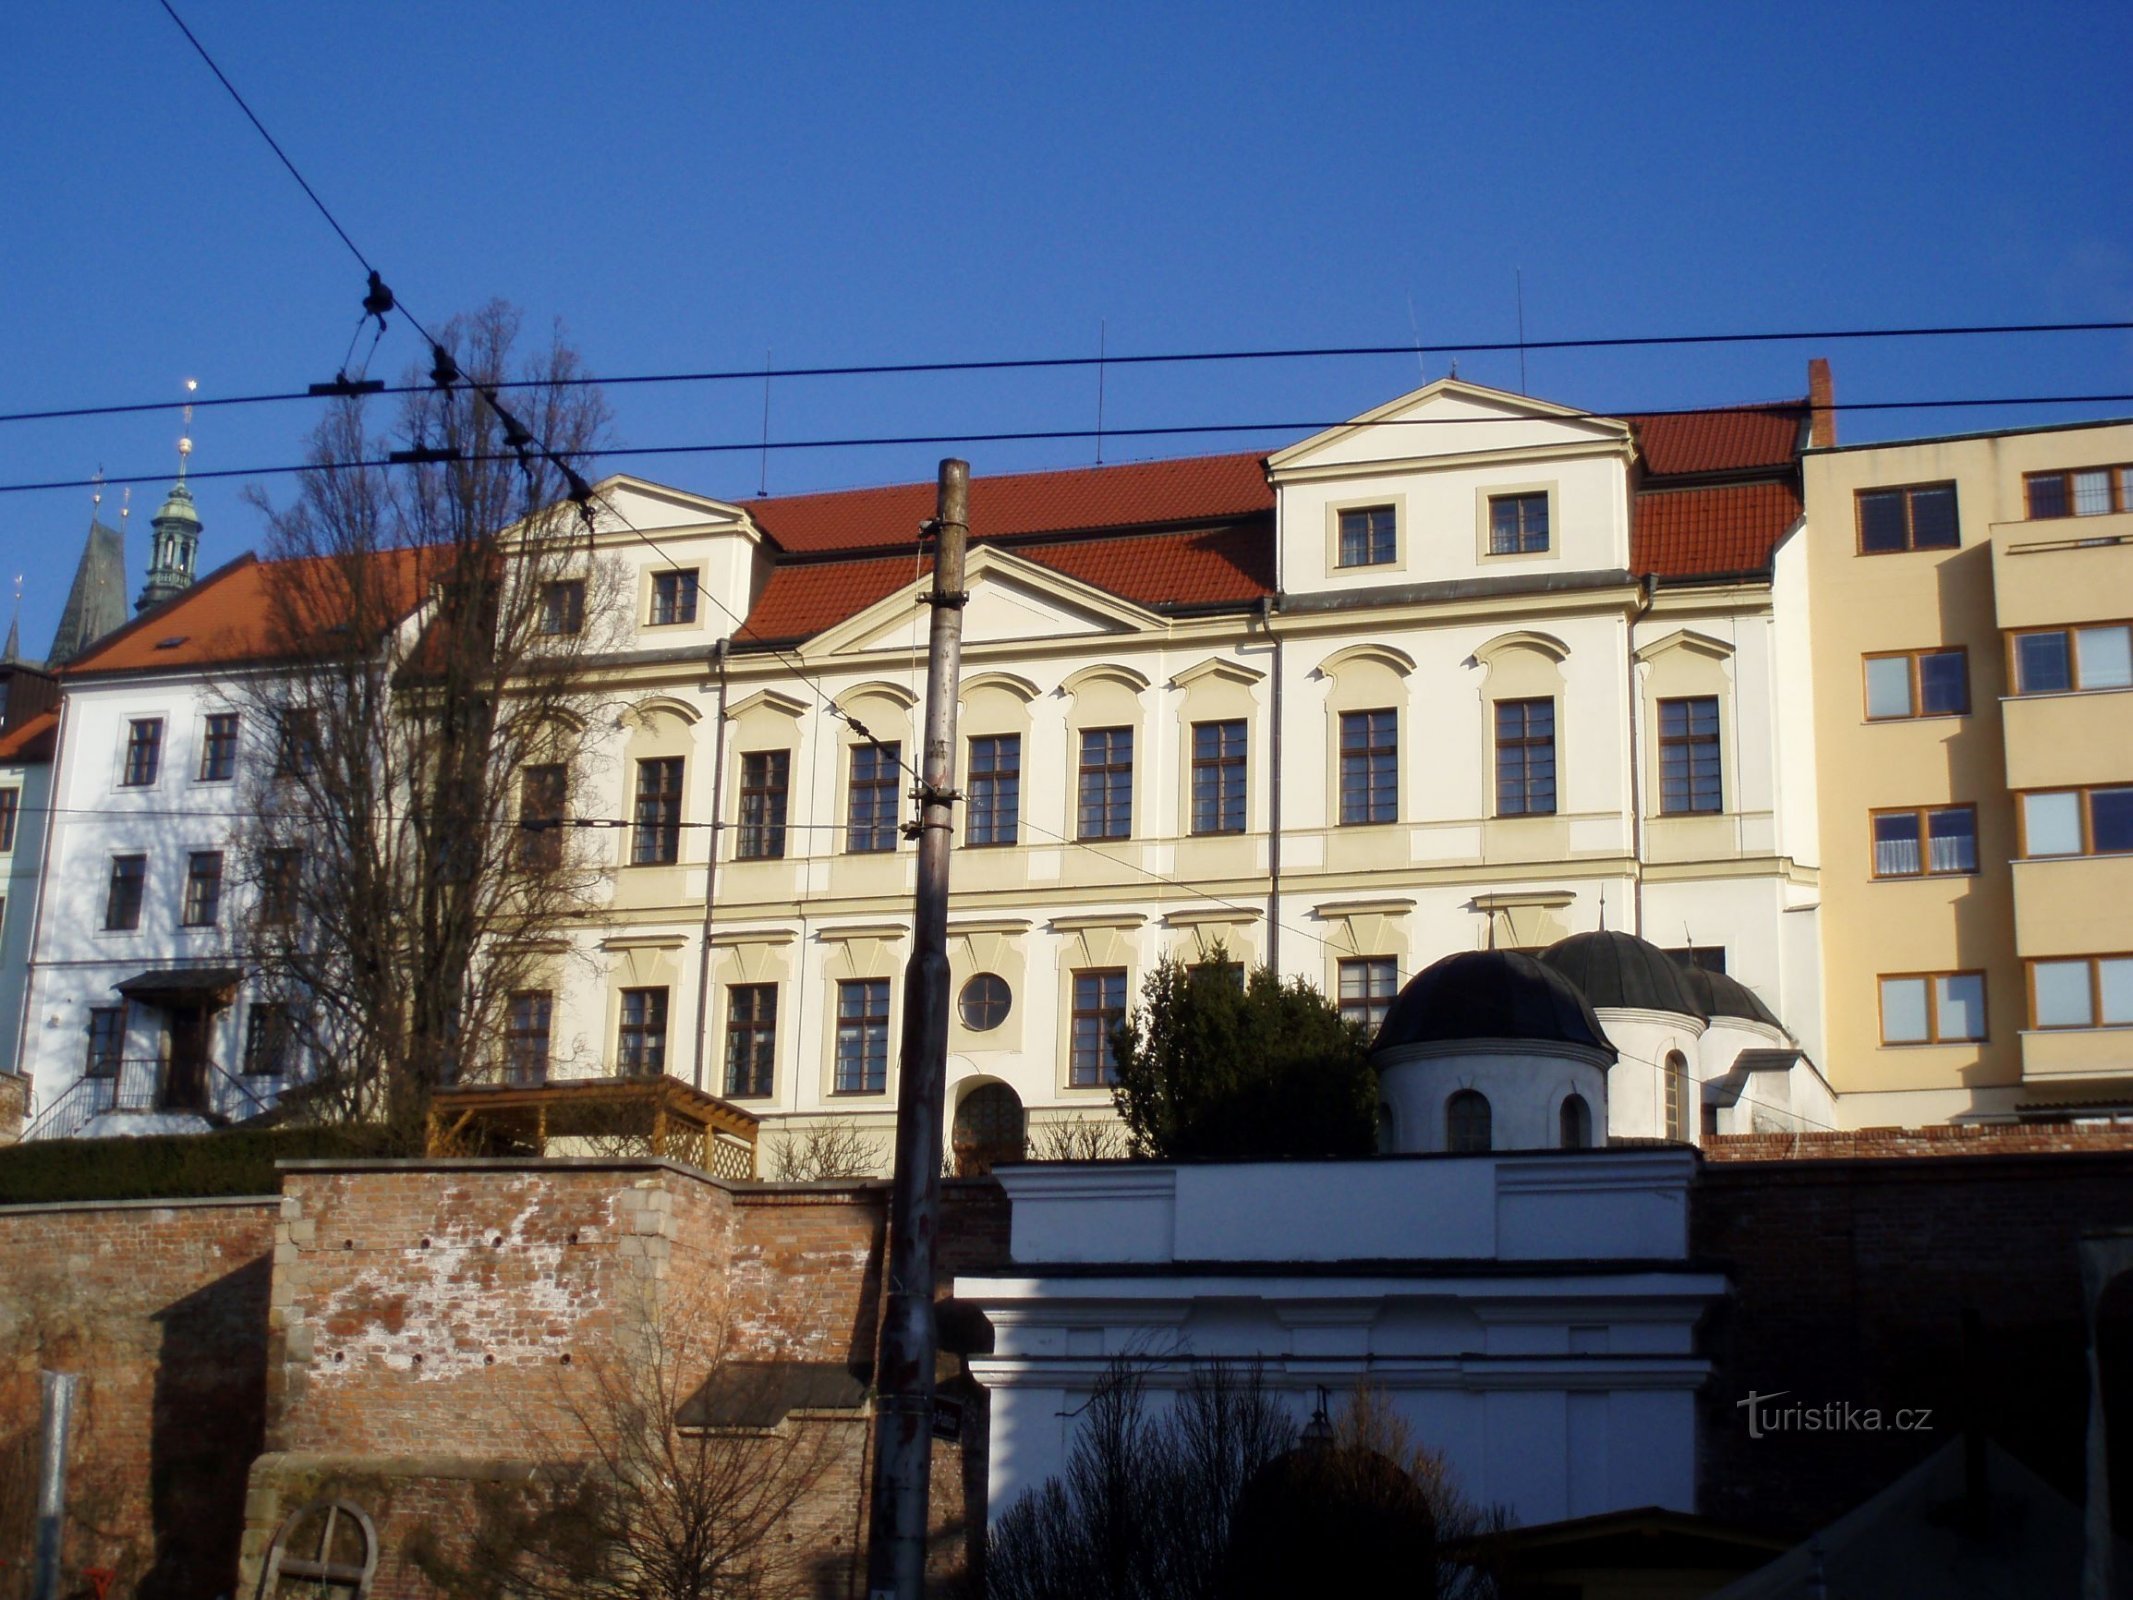 Bispebolig (Hradec Králové, 21.3.2011)